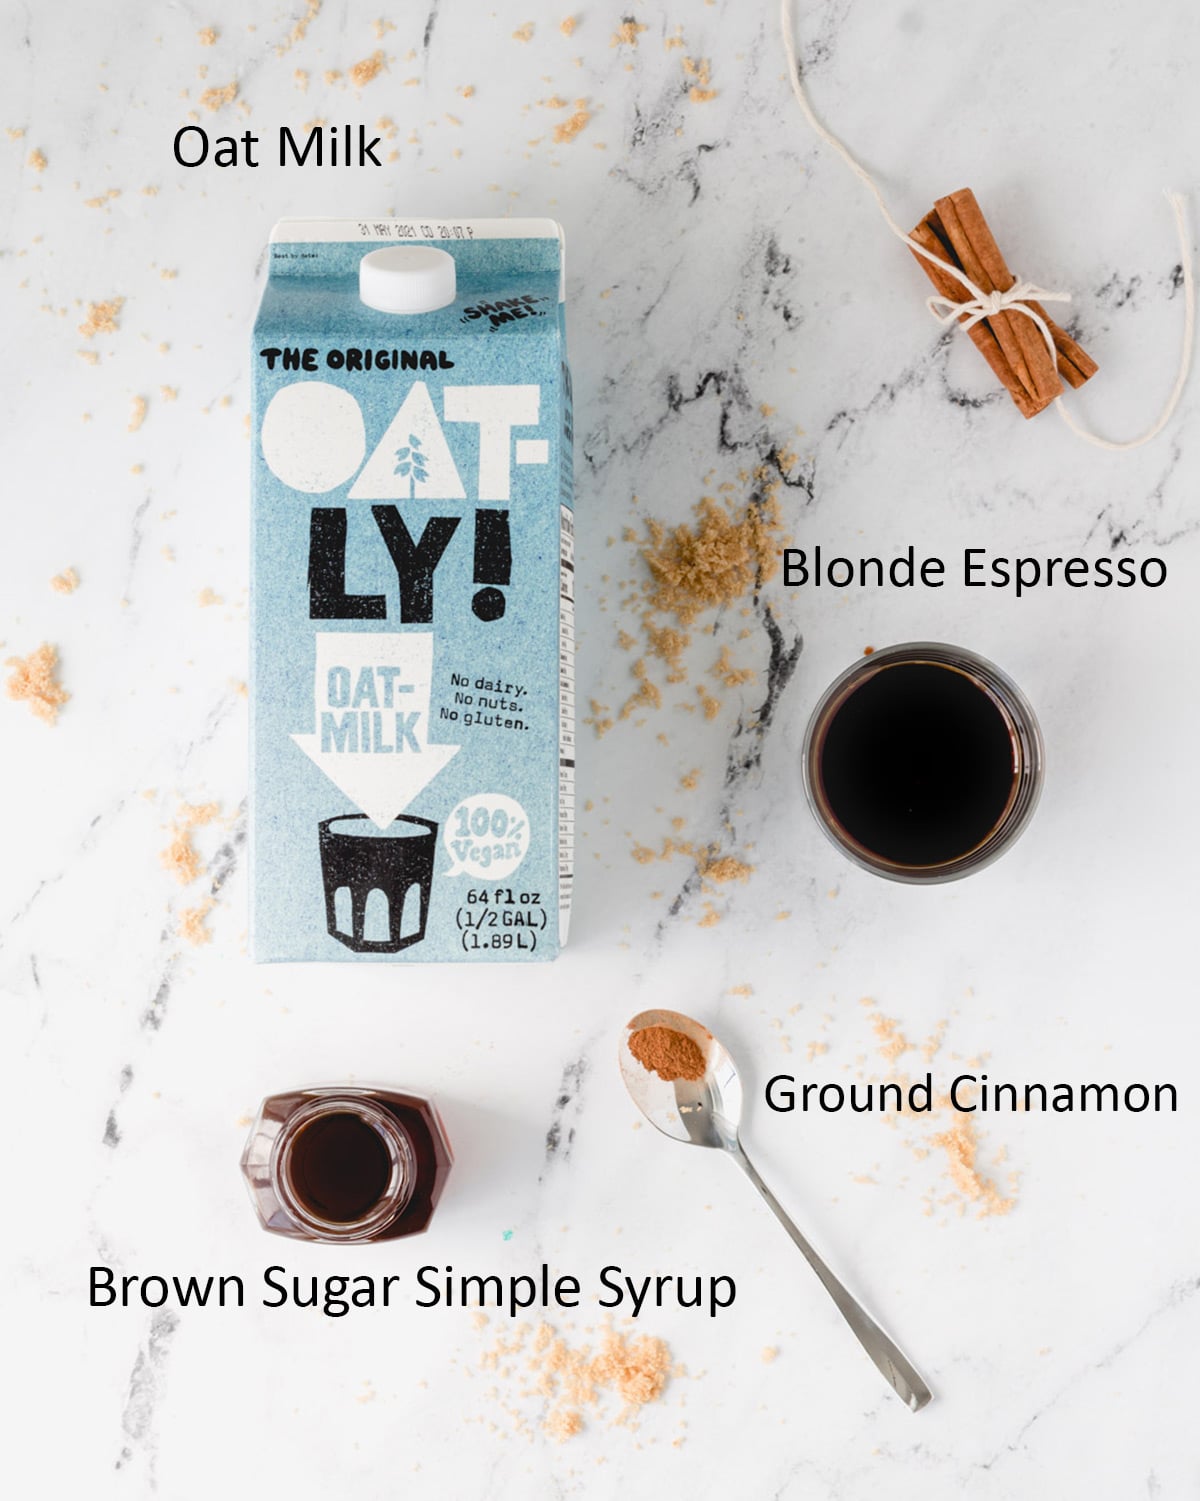 Brown Sugar Oat Milk Shaken Espresso Ingredients: Oat milk, blonde espresso, brown sugar simple syrup, ground cinnamon.